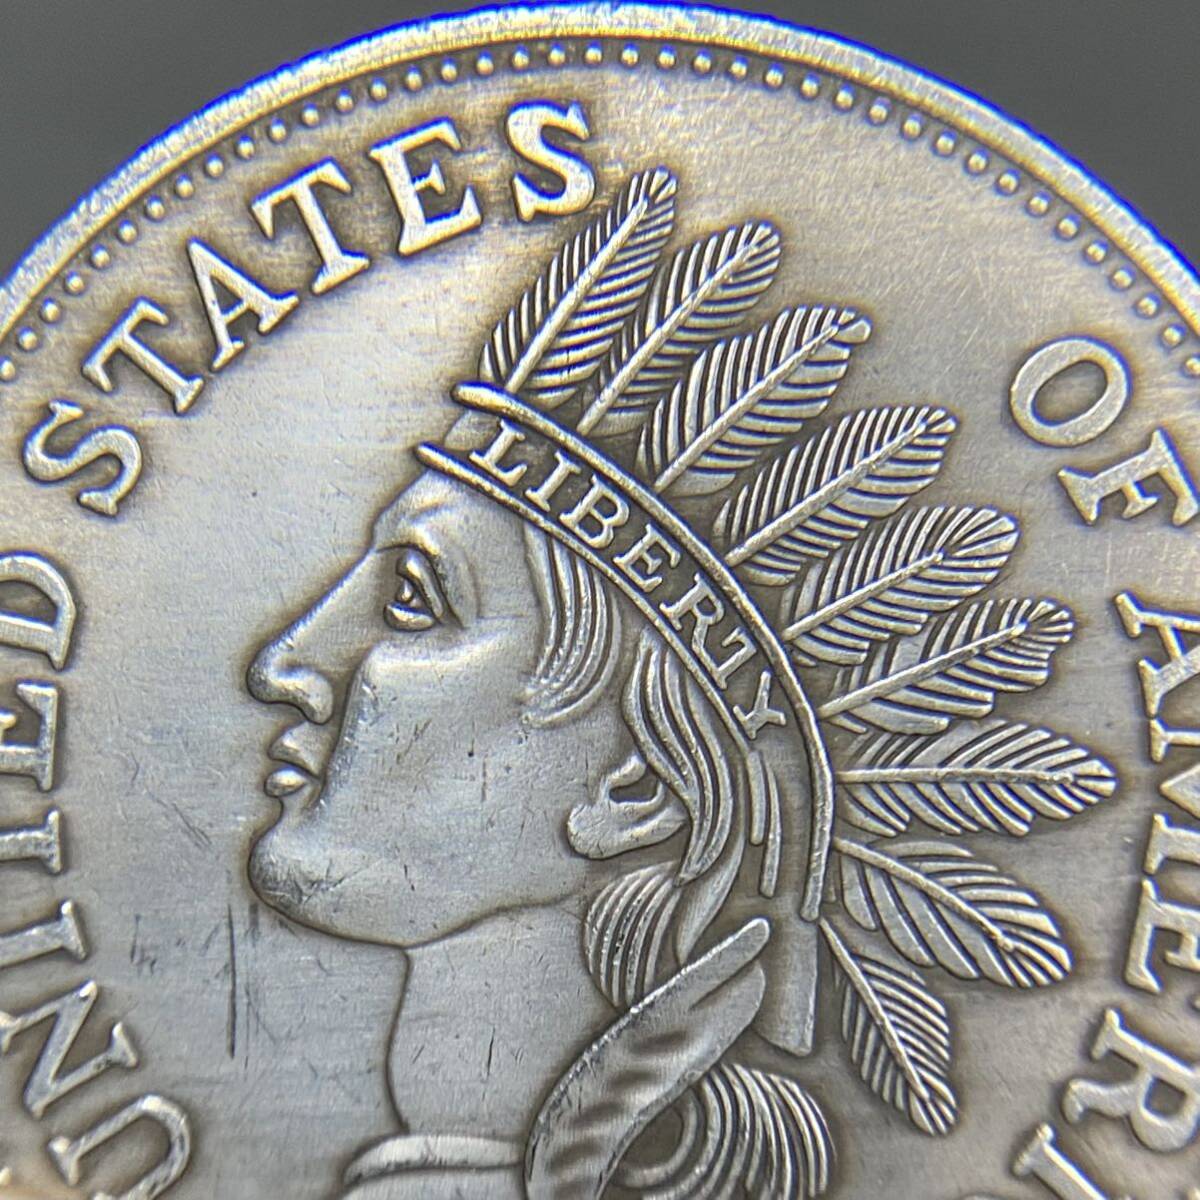 アメリカ古銭 約20.53g アメリカ先住民ヘッド 1851 一円貨幣 硬貨骨董品コインコレクションの画像3